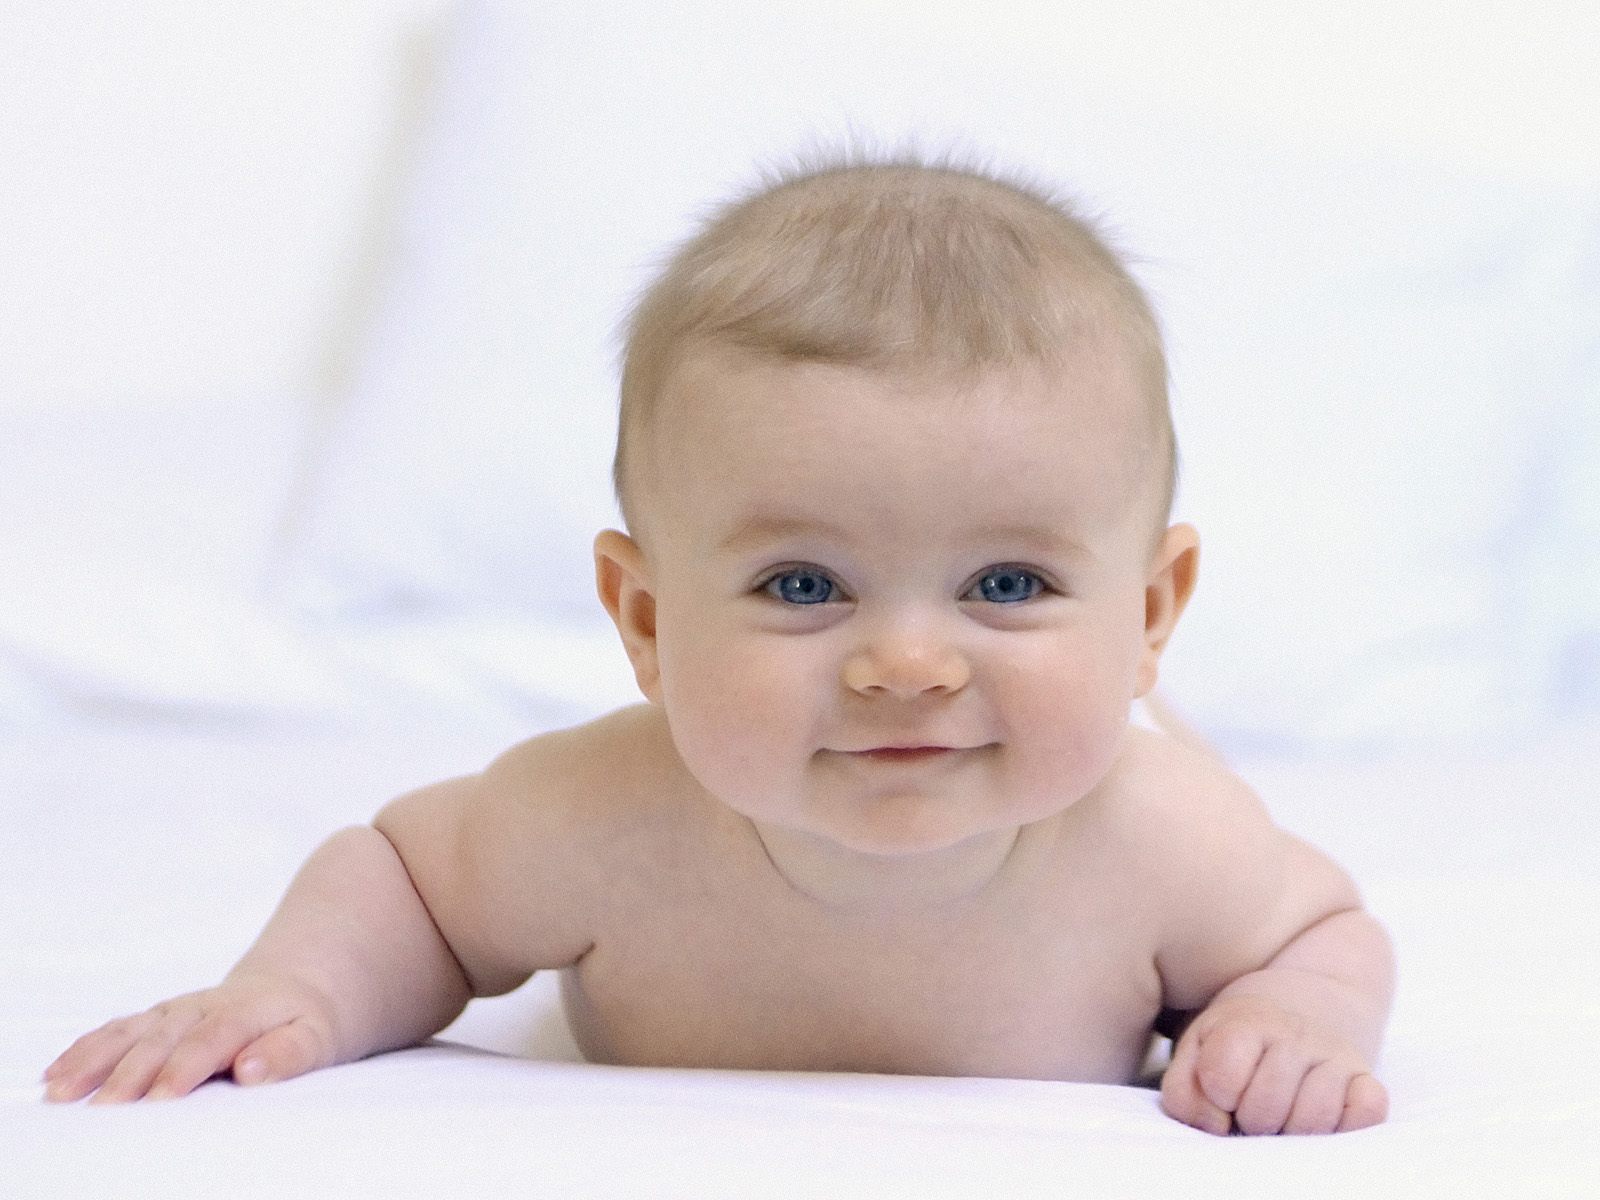 One Happy Baby Image